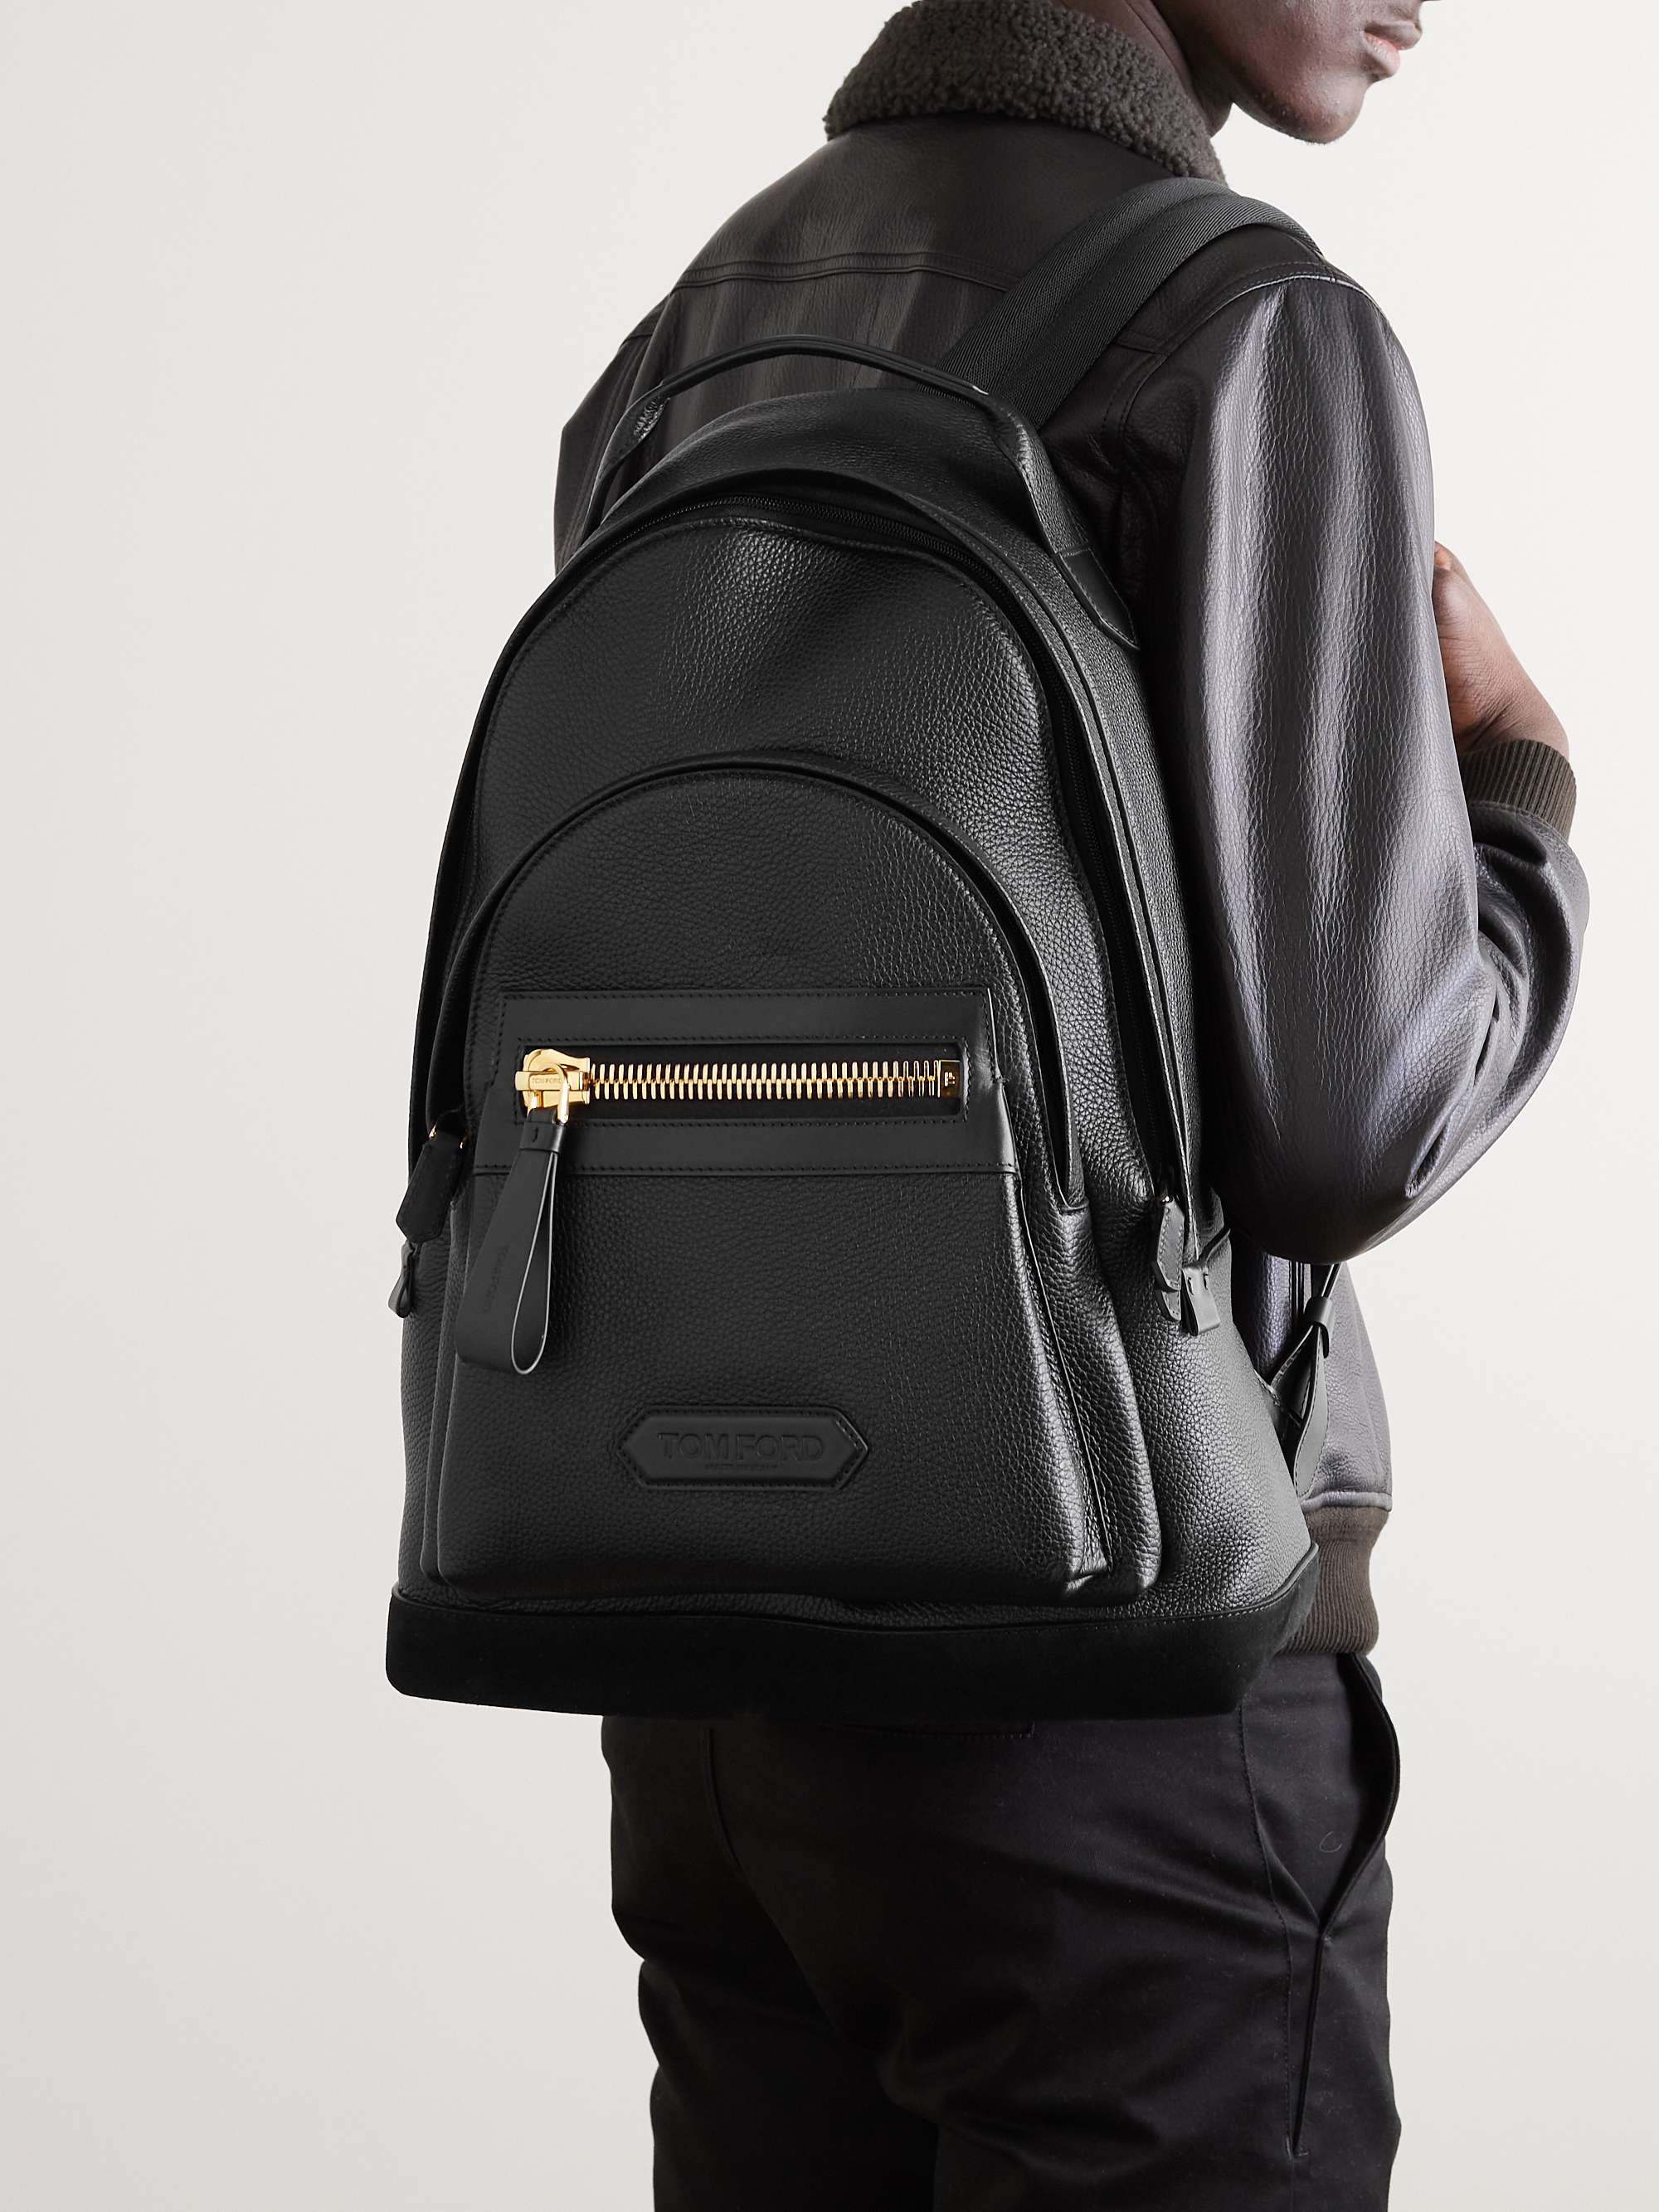 TOM FORD Pebble-Grain Leather Backpack for Men | MR PORTER